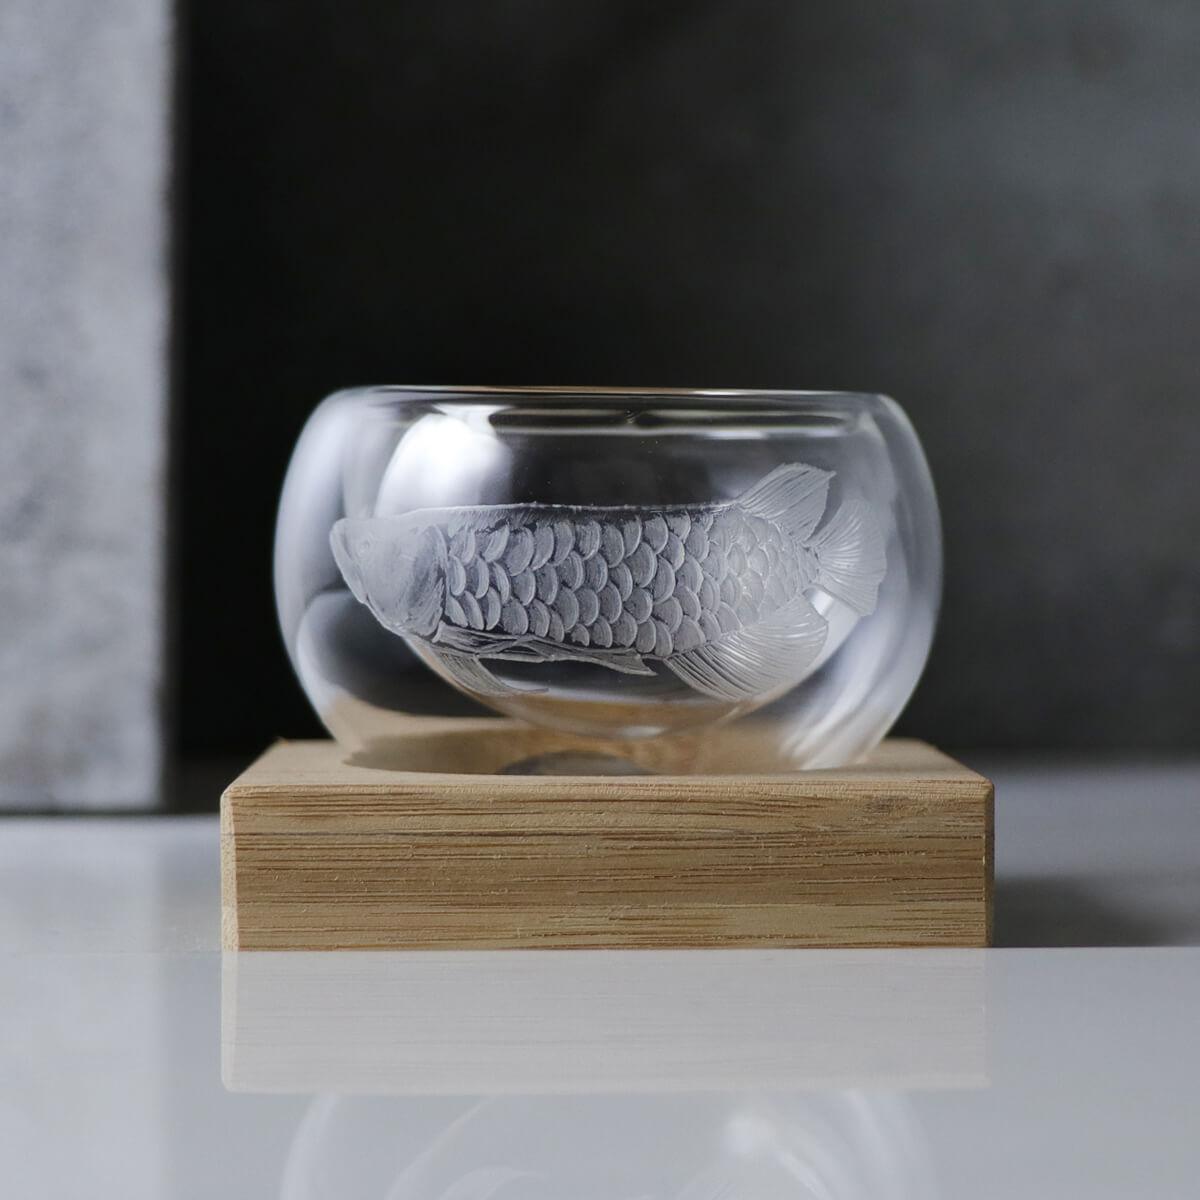 50cc【紅龍】龍魚雕刻雙層茶杯 - MSA玻璃雕刻